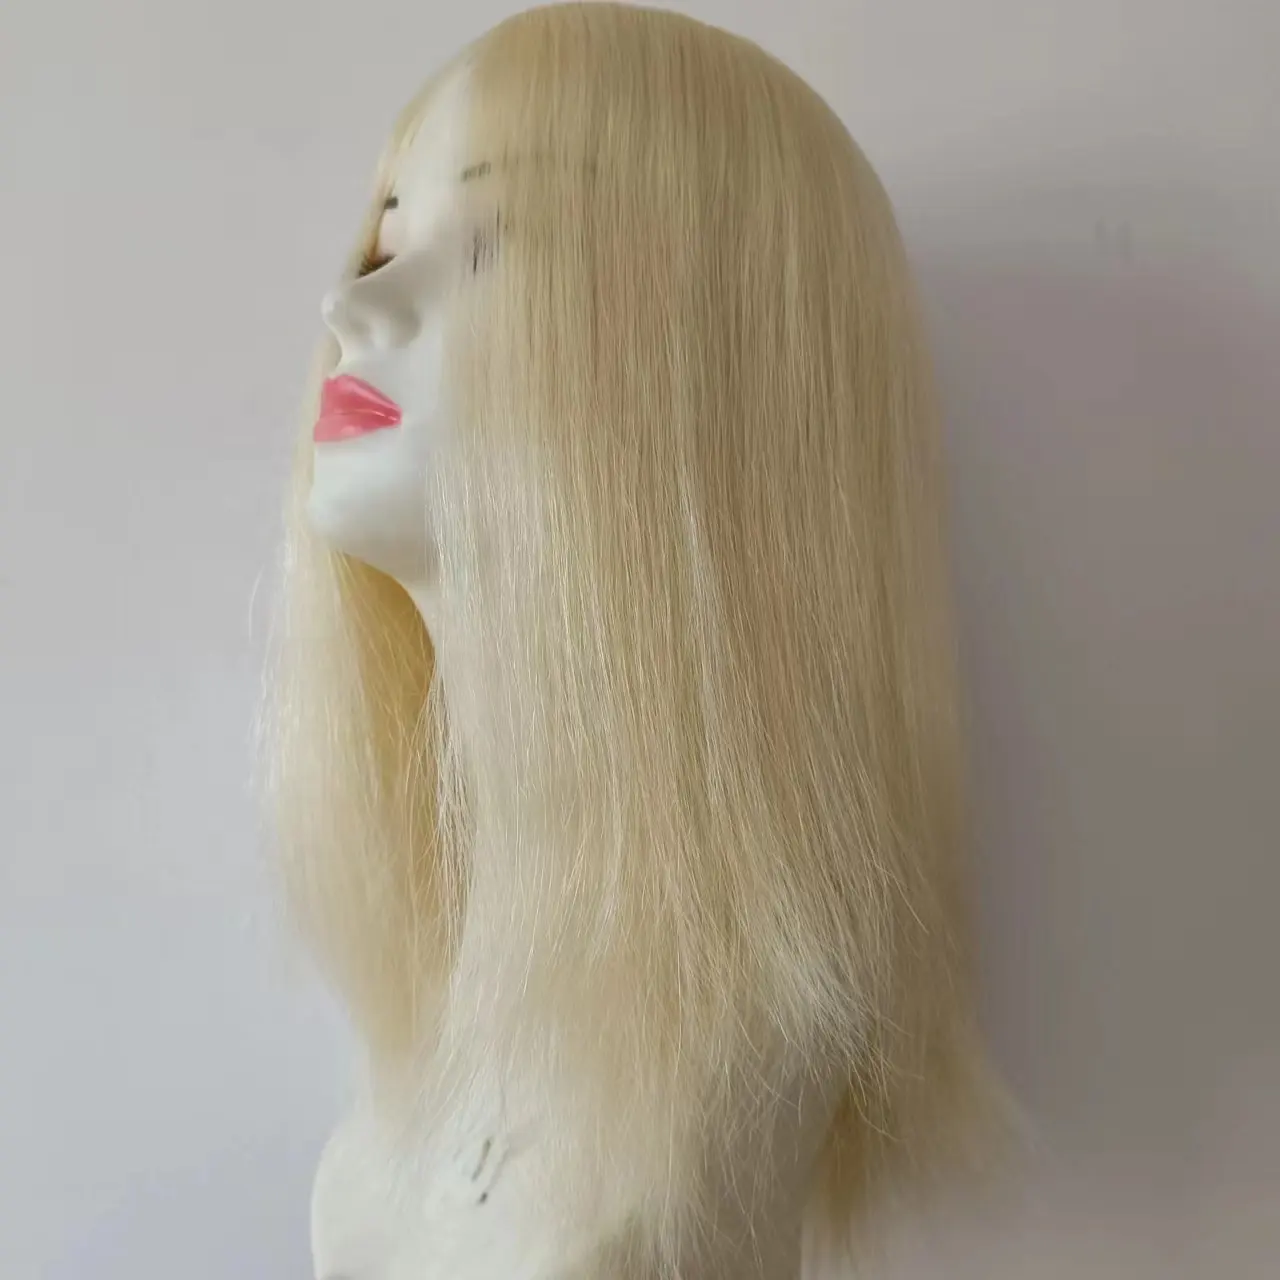 Proveedor al por mayor Topper pelo Color Rubio 14 pulgadas en existencias belleza Topper de cabello humano virgen real para mujeres y hombres